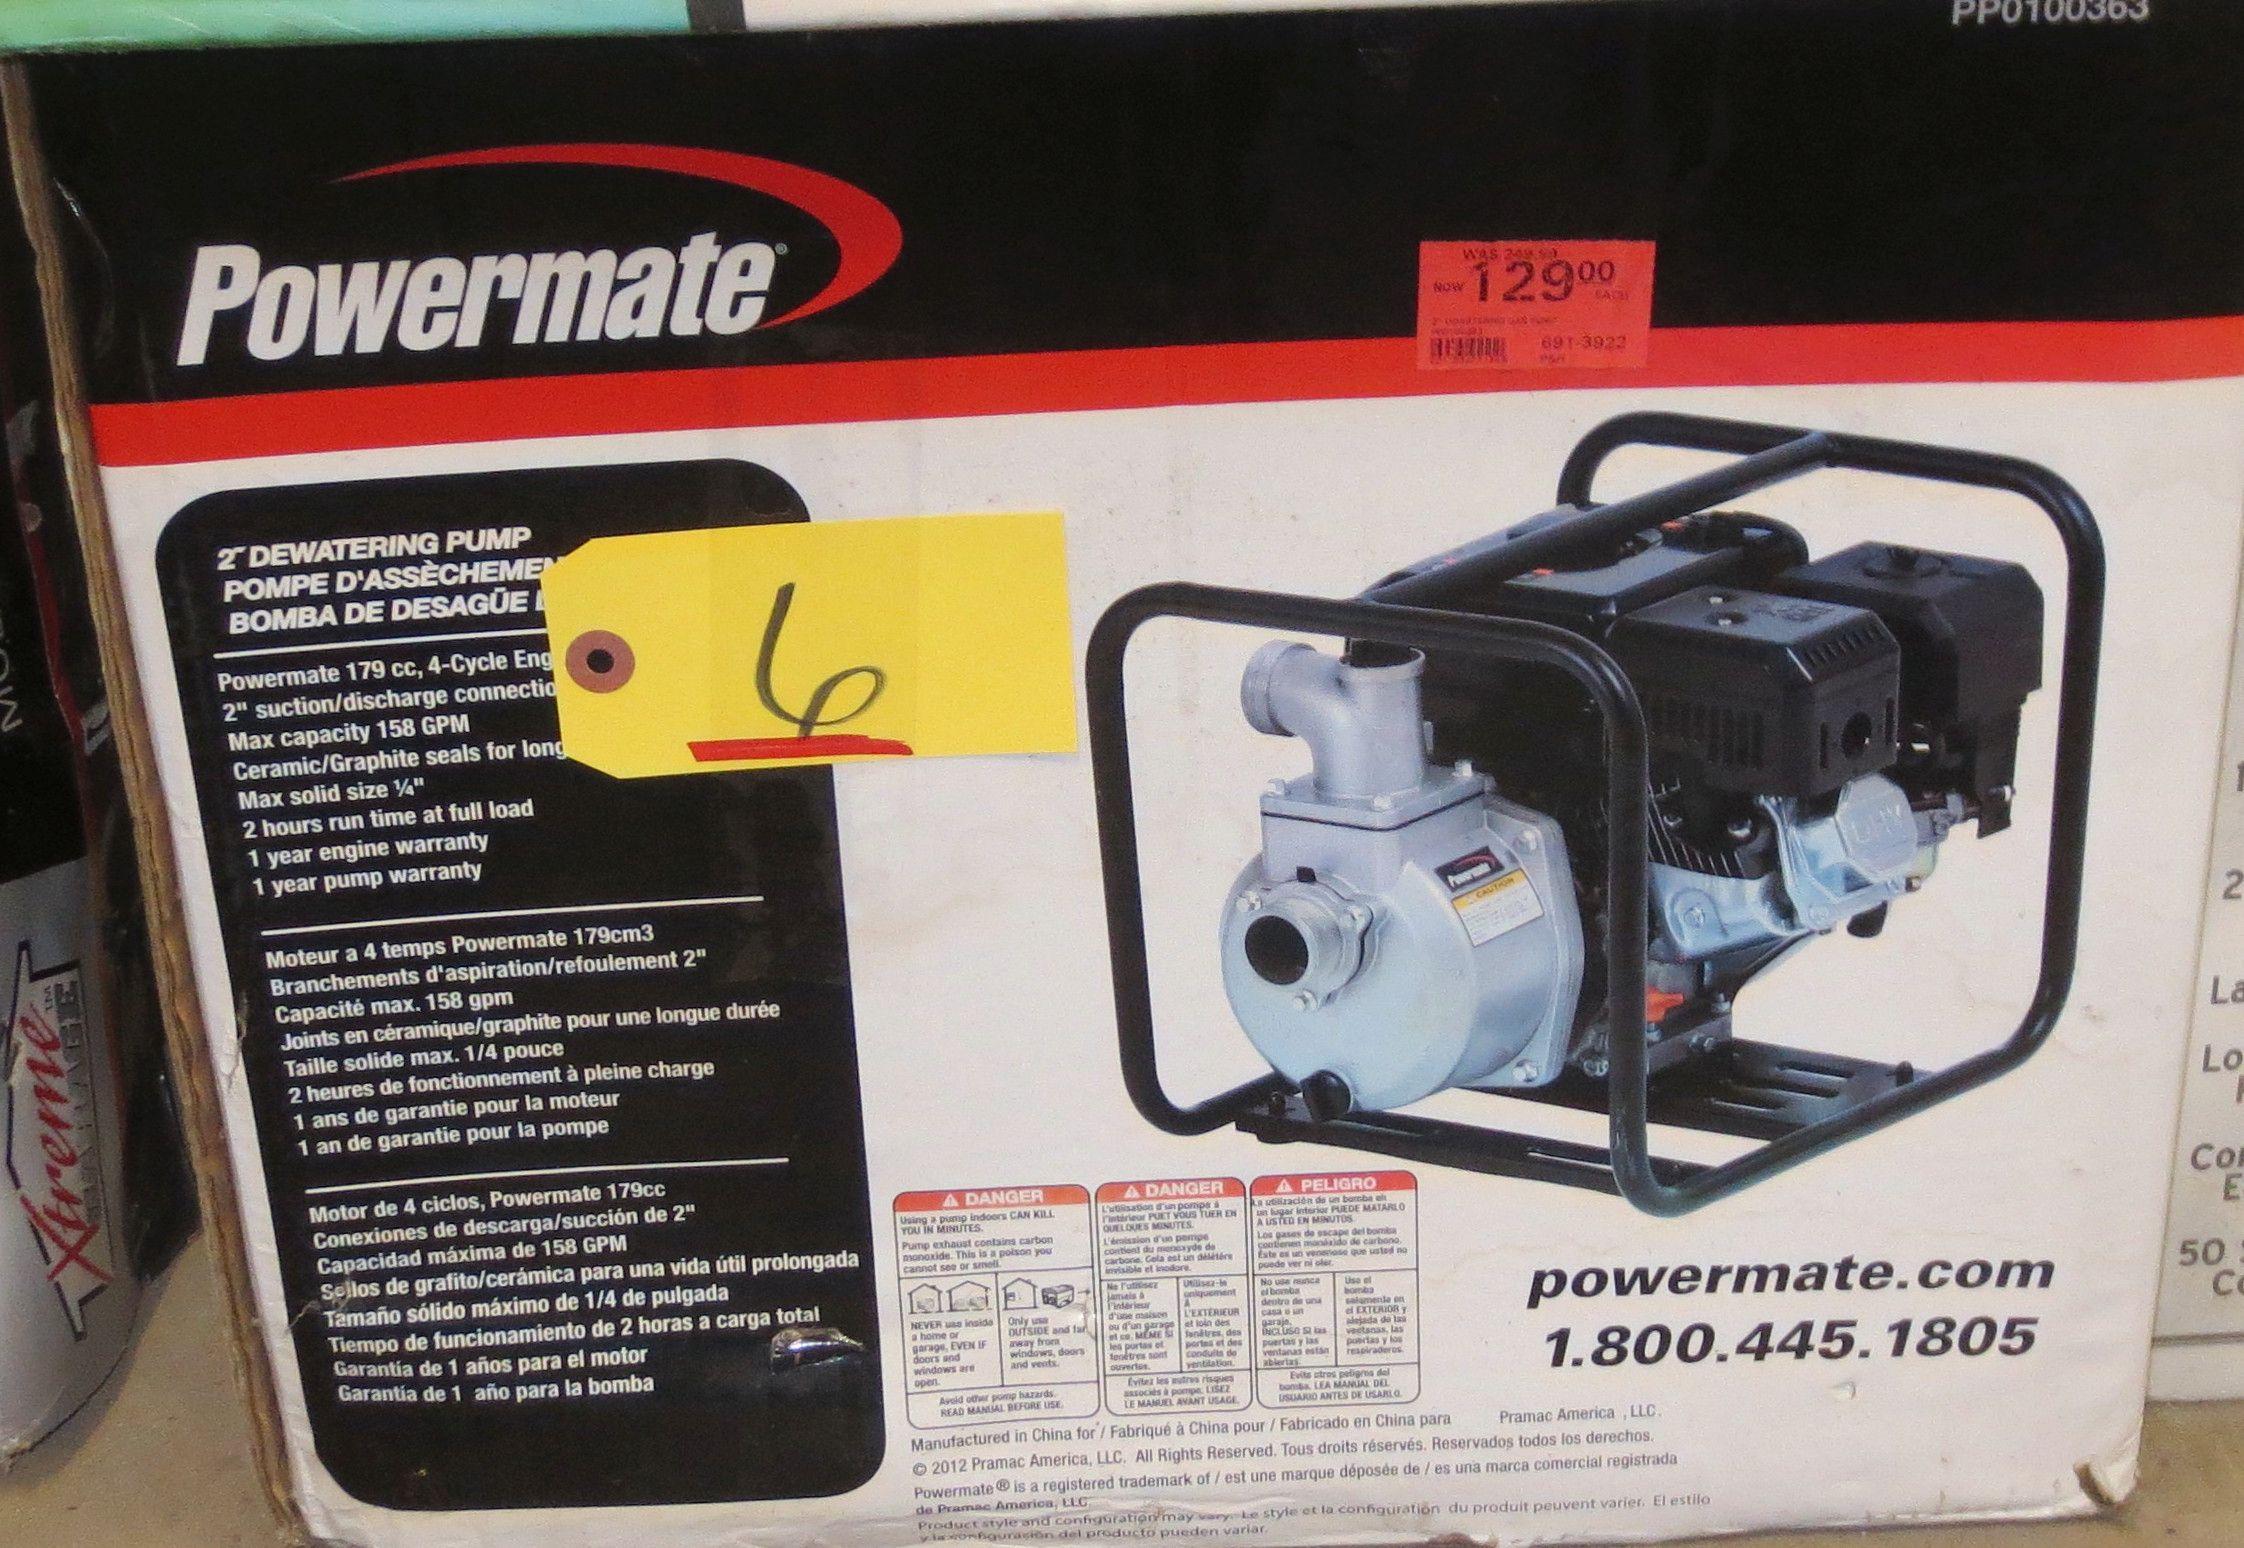 Powermate 2" Dewatering Pump